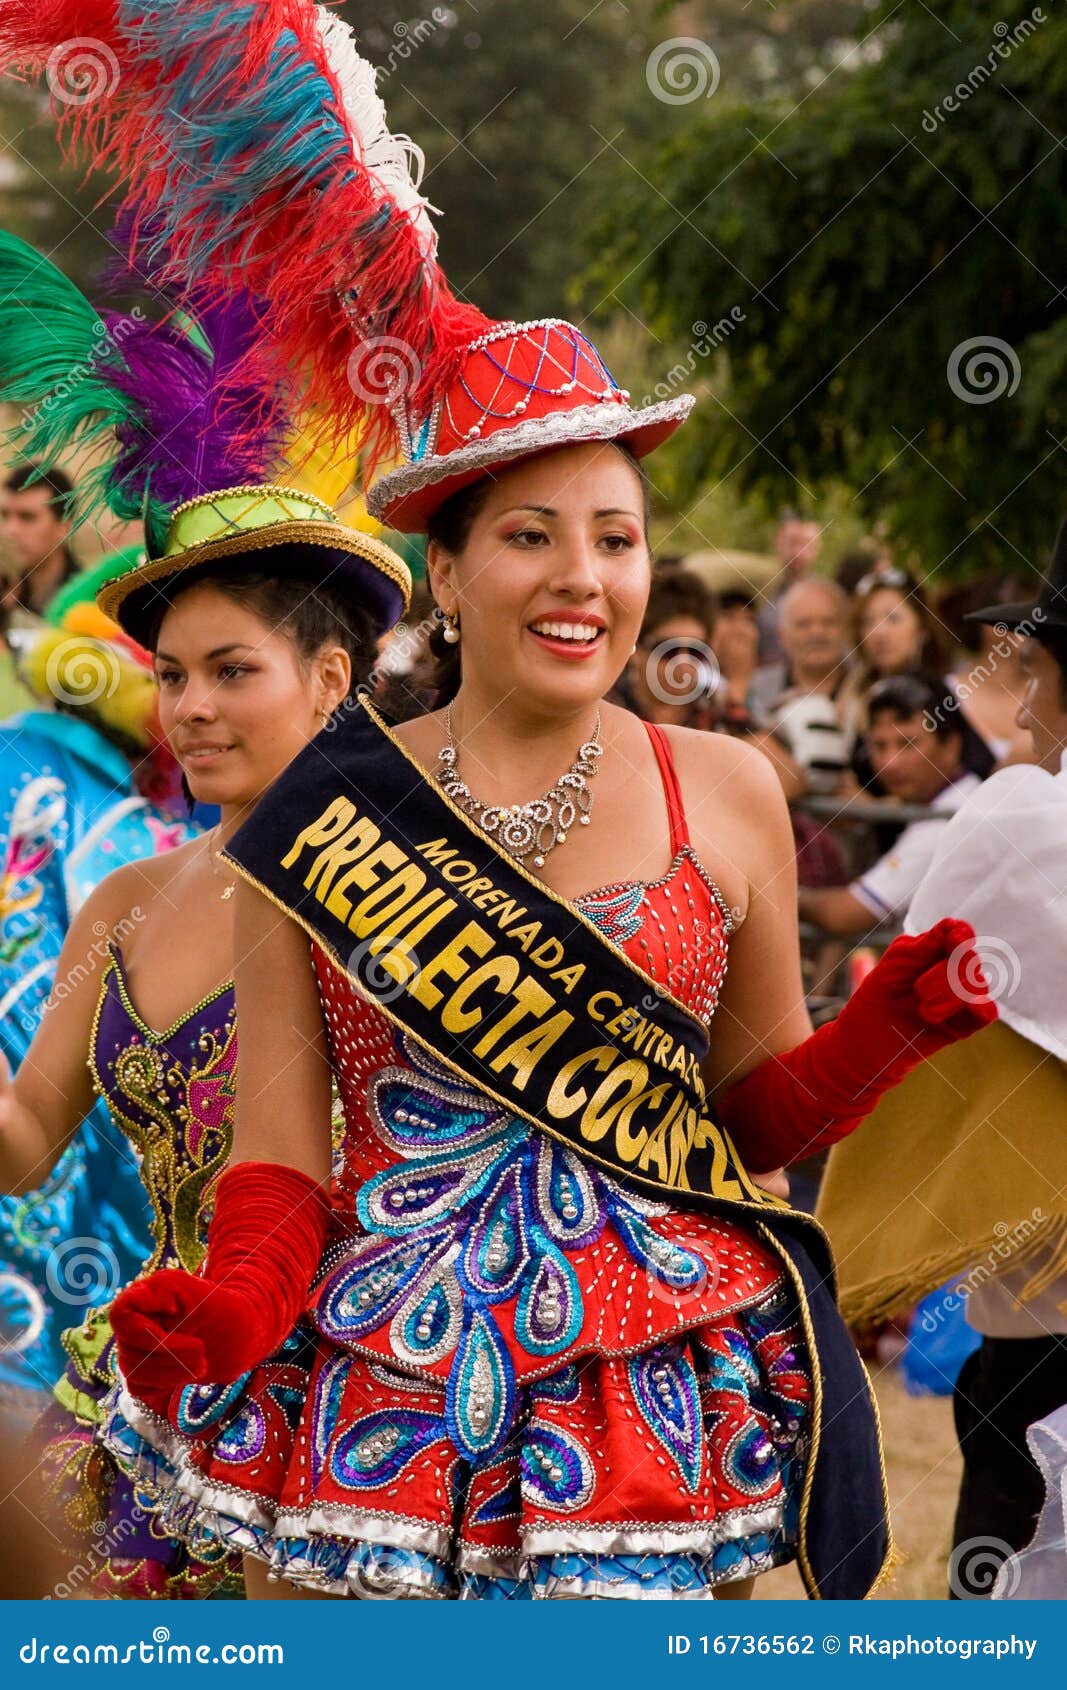 Bolivian Morenada Dancers at Carnaval Del Pueblo Editorial Photography ...